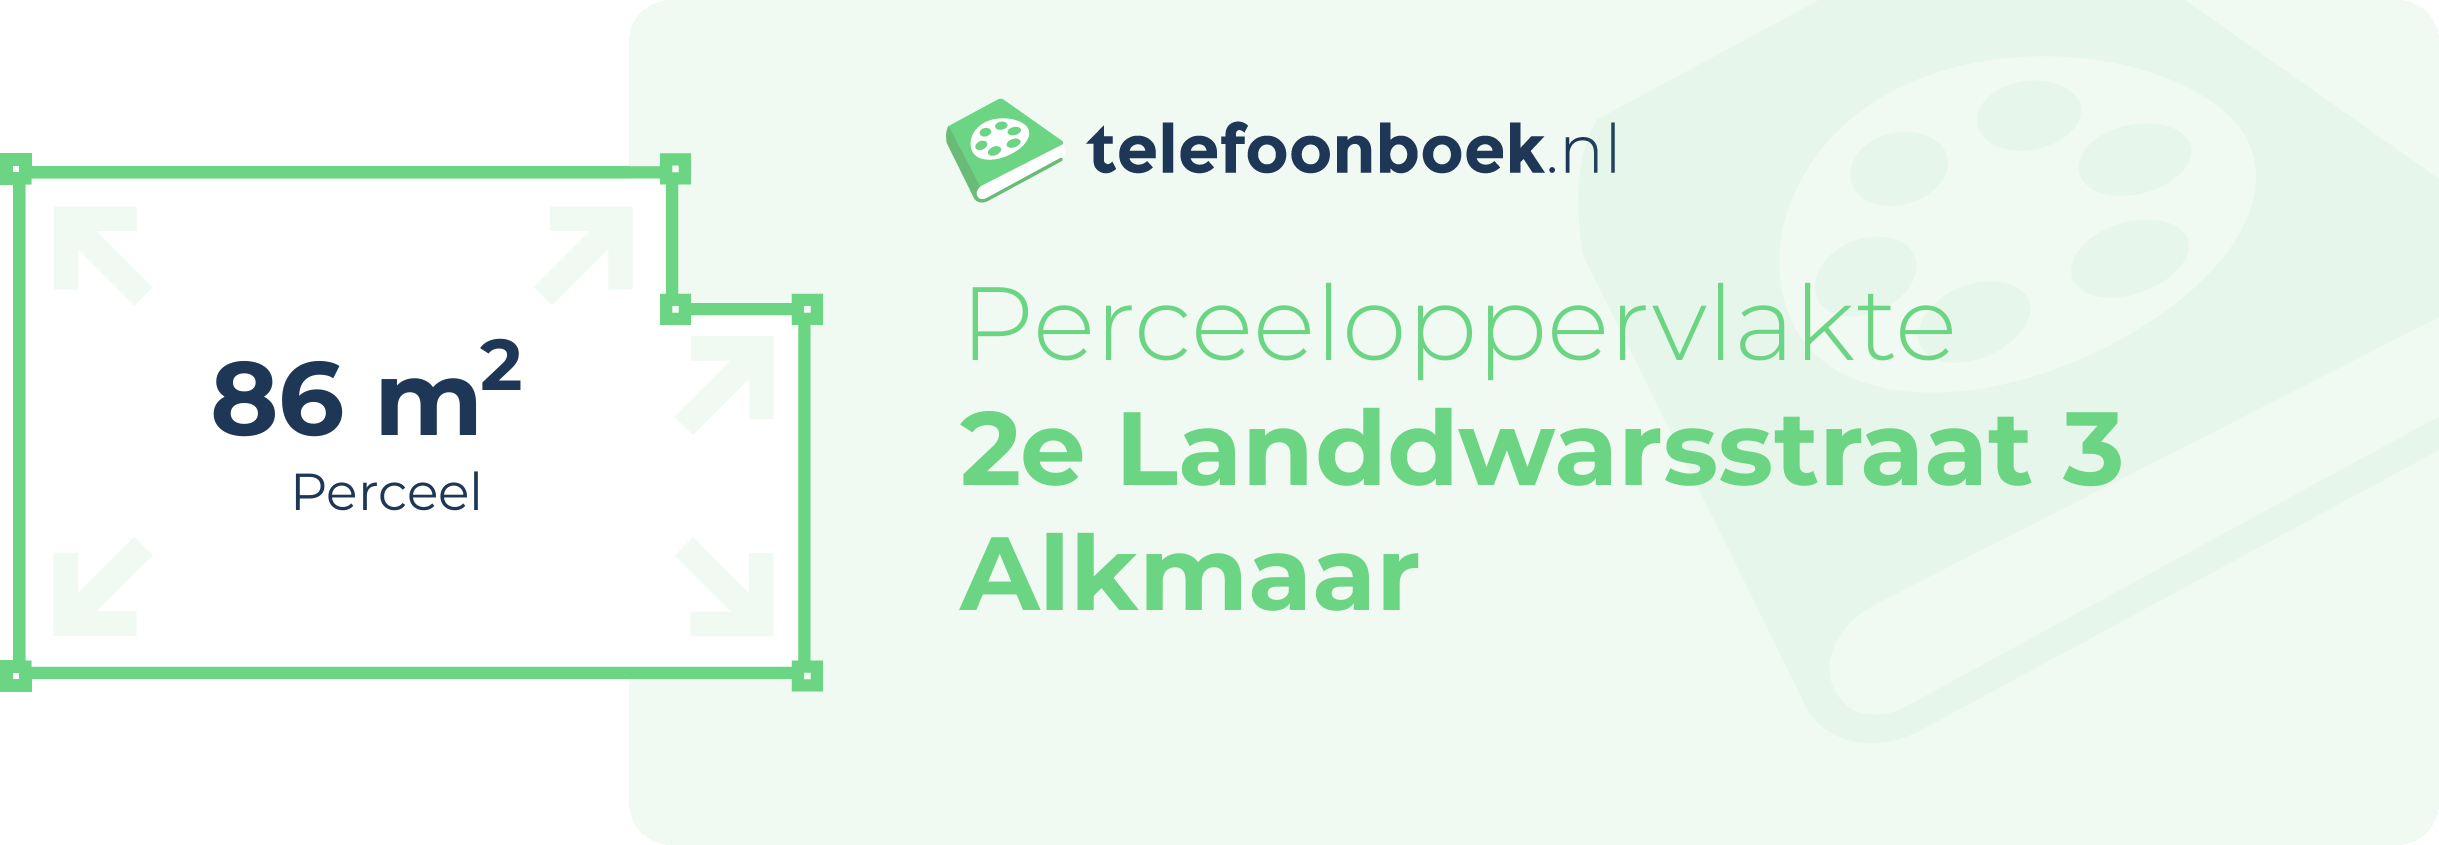 Perceeloppervlakte 2e Landdwarsstraat 3 Alkmaar